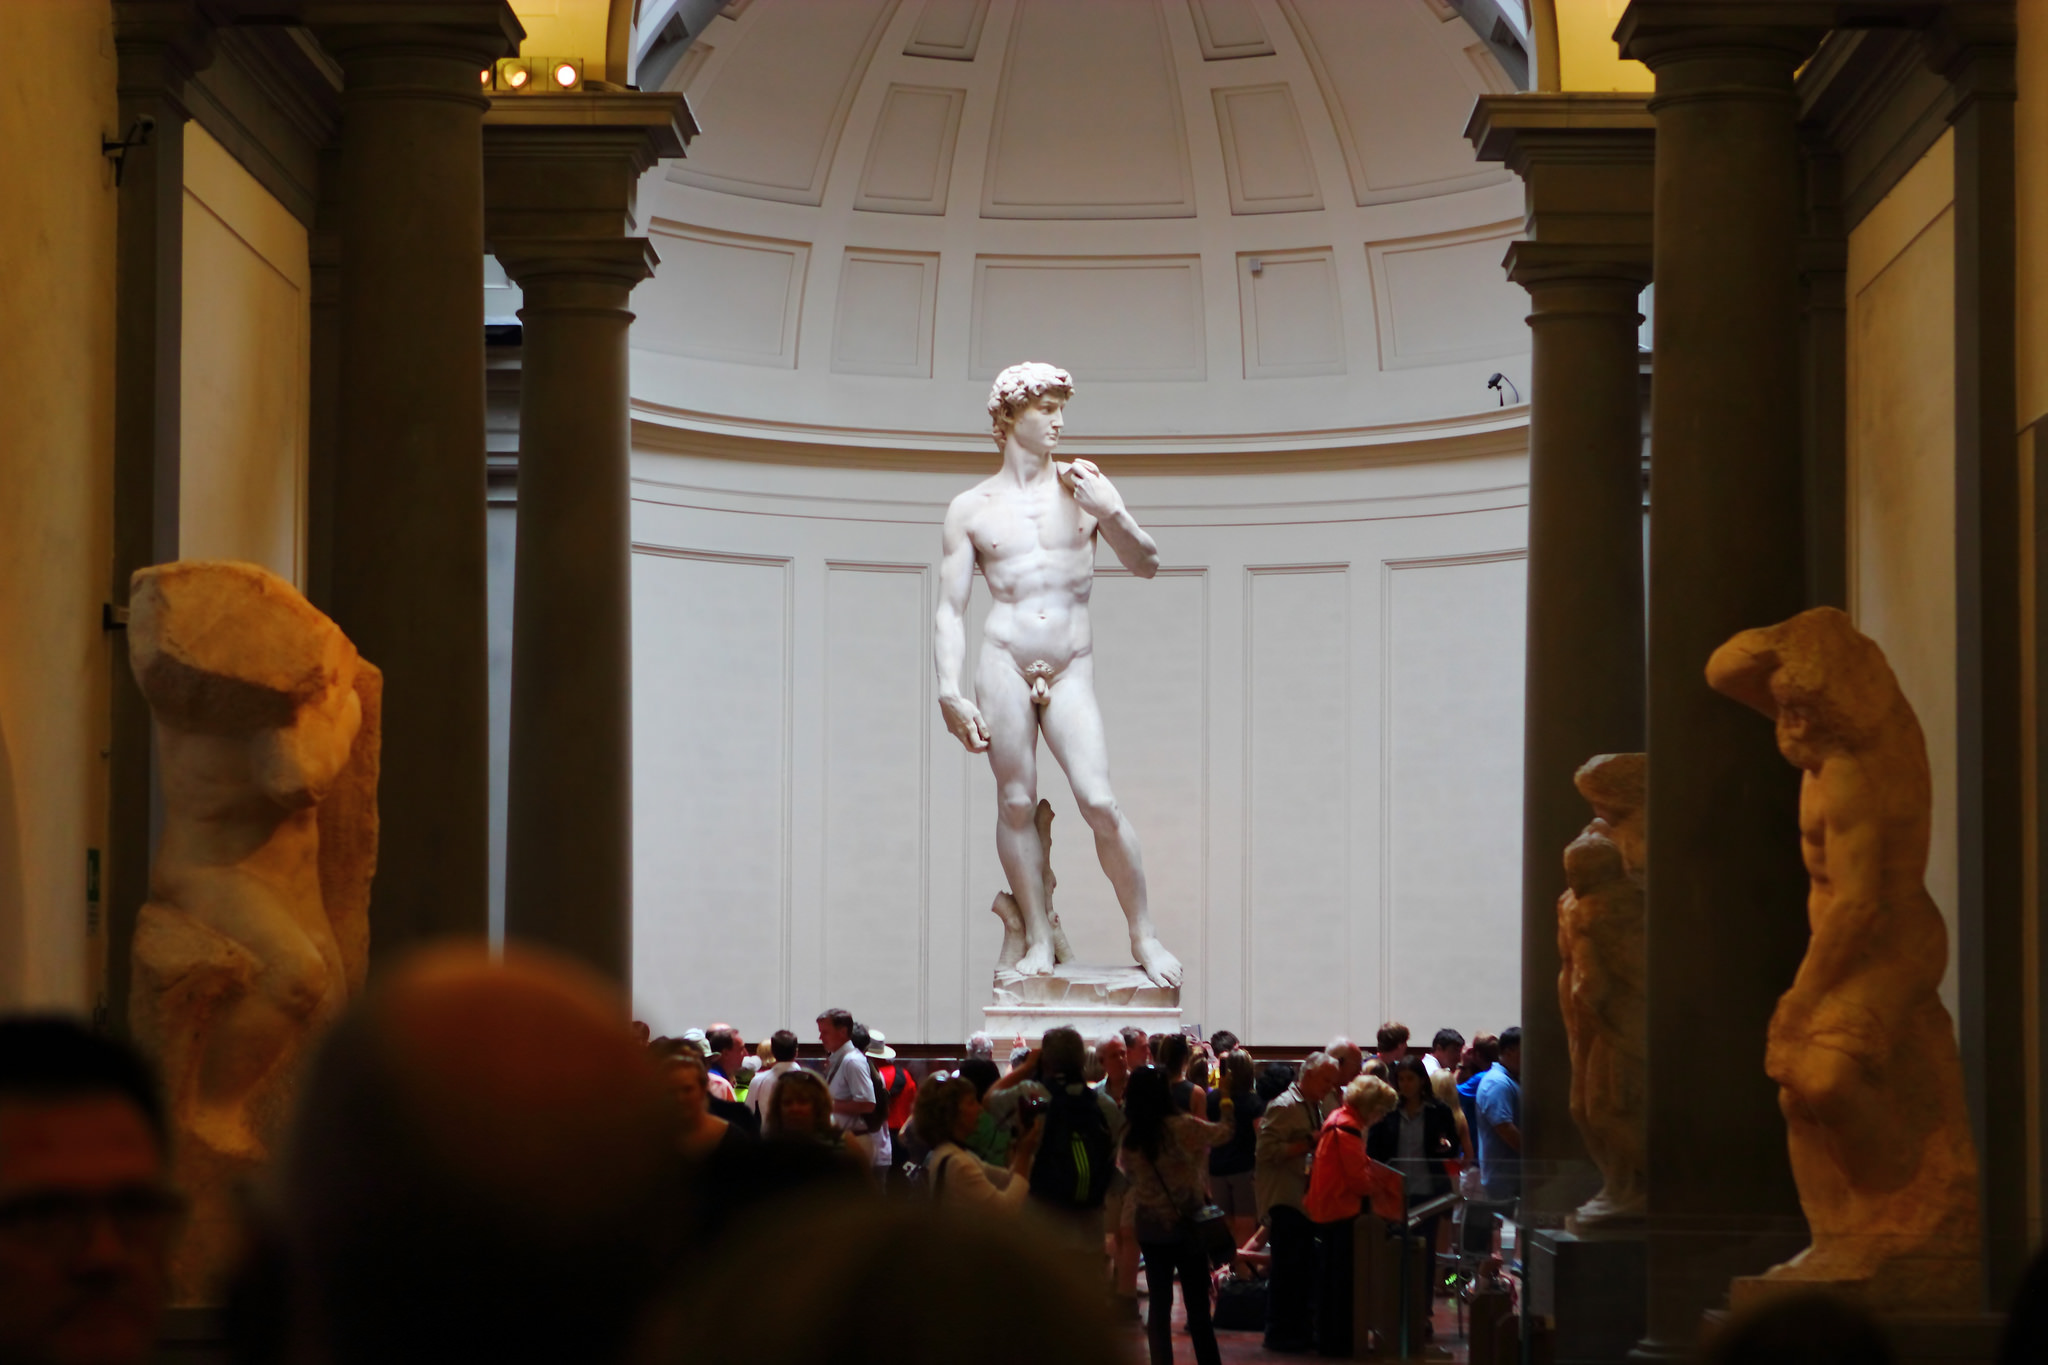 El David de pie en una gran sala circular. La estatua está levantada sobre un pedestal, por lo que no es obstruida por la gran multitud reunida frente a ella.